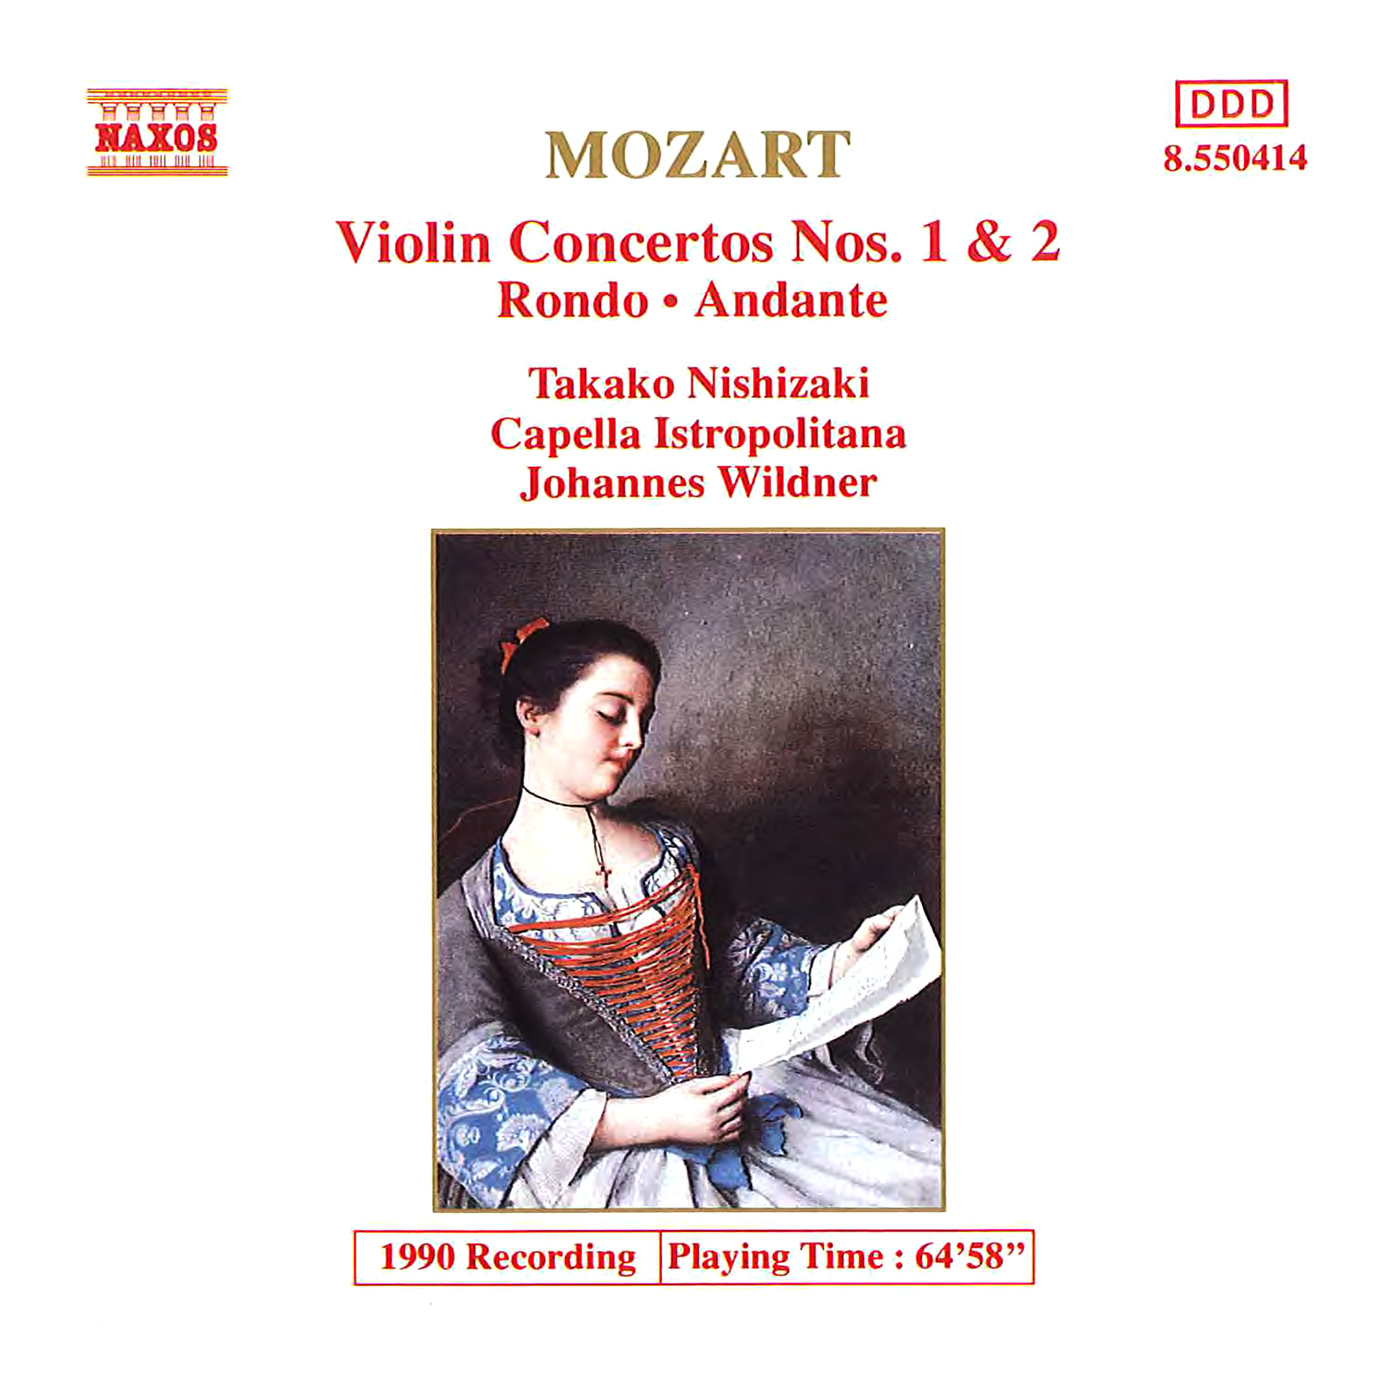 Violin Concerto No. 2 in D Major, K. 211:I. Allegro moderato